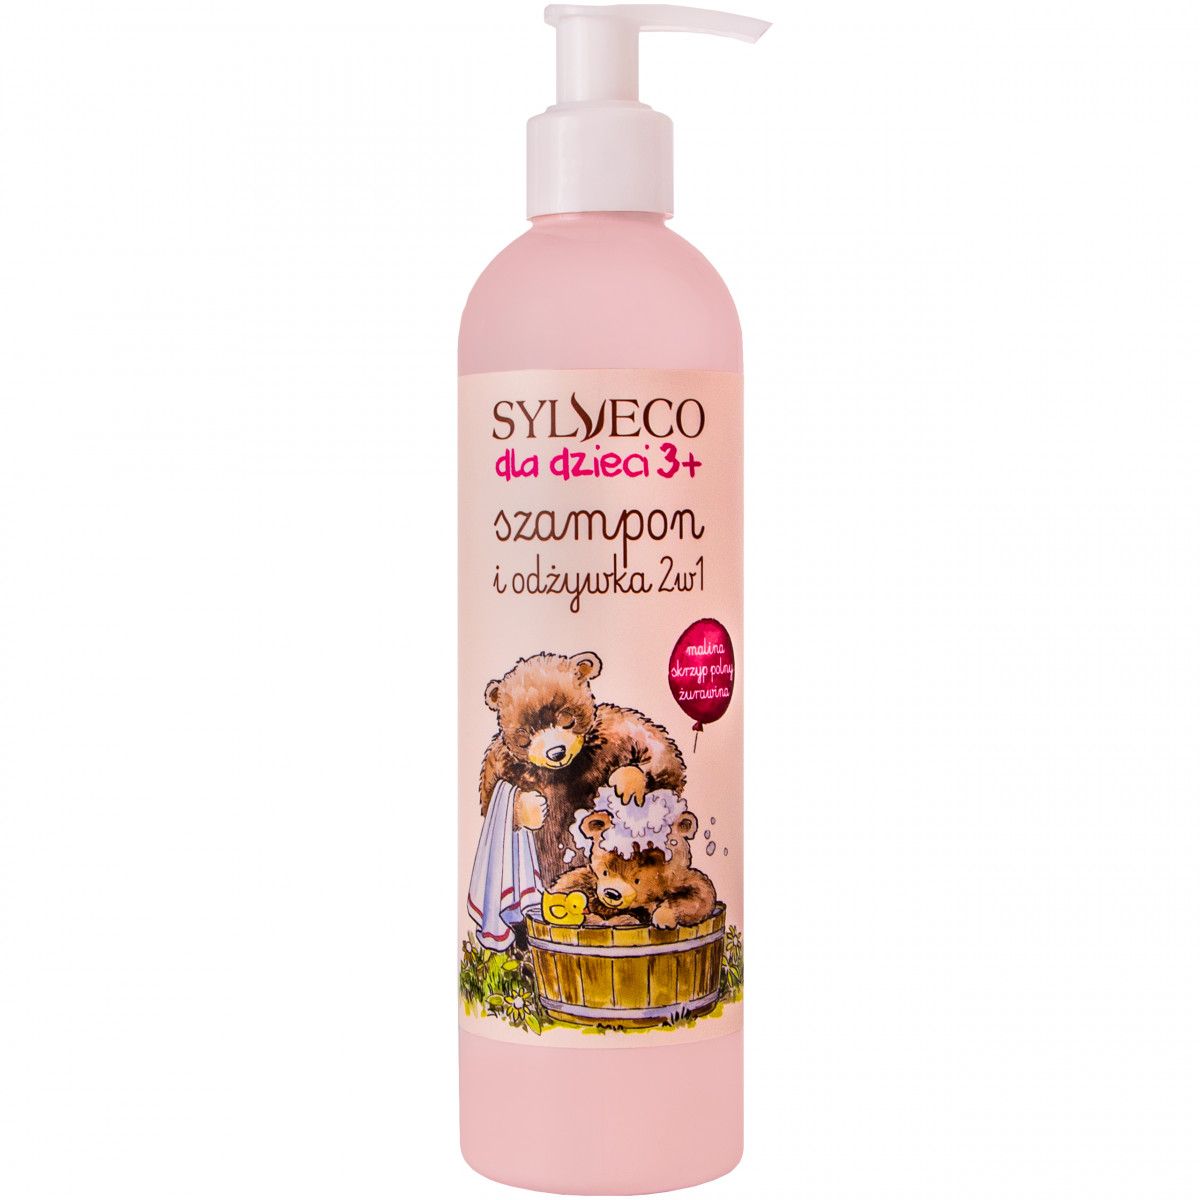 szampon dla dzieci krzyzowka-piccolo